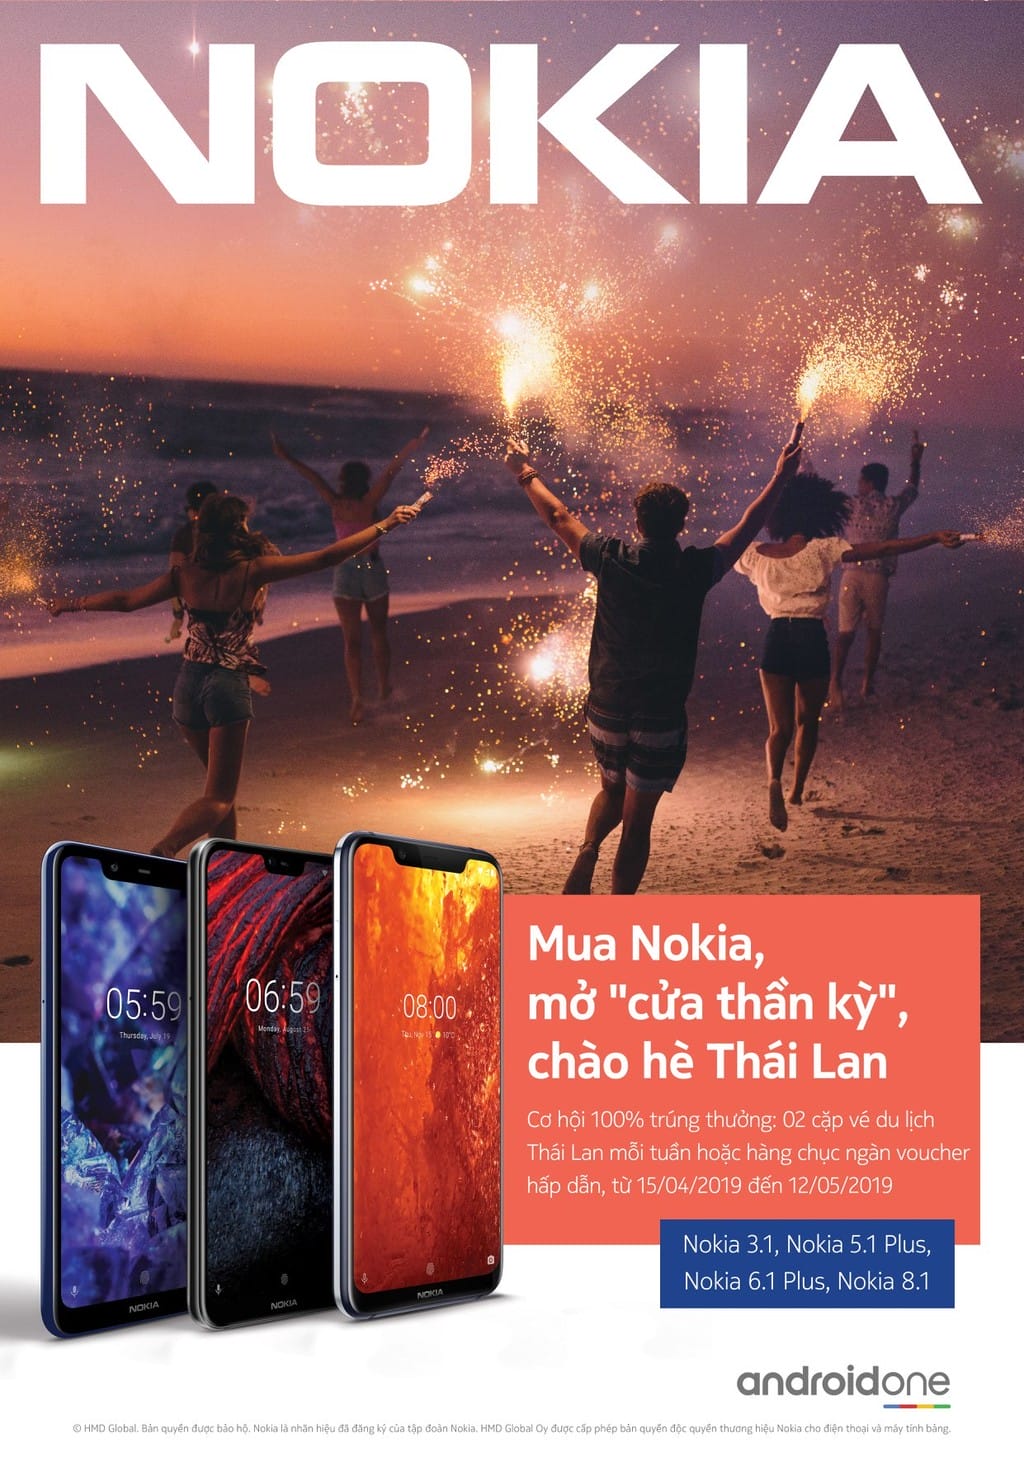 Nokia tung chương trình khuyến mãi “Mở cửa thần kỳ, chào hè Thái Lan” ảnh 1